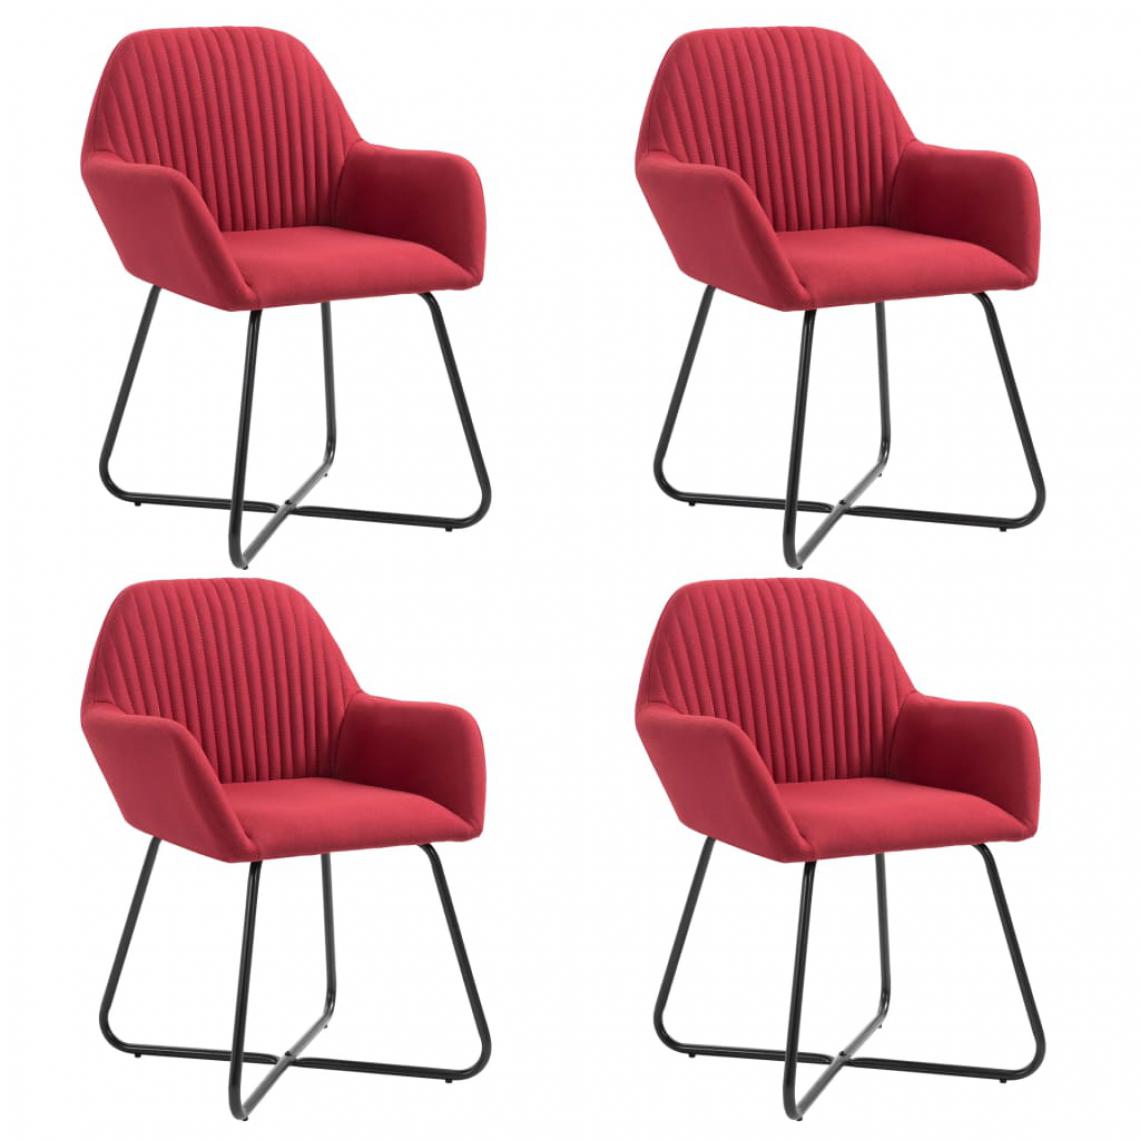 Chunhelife - Chaises de salle à manger 4 pcs Rouge bordeaux Tissu - Chaises